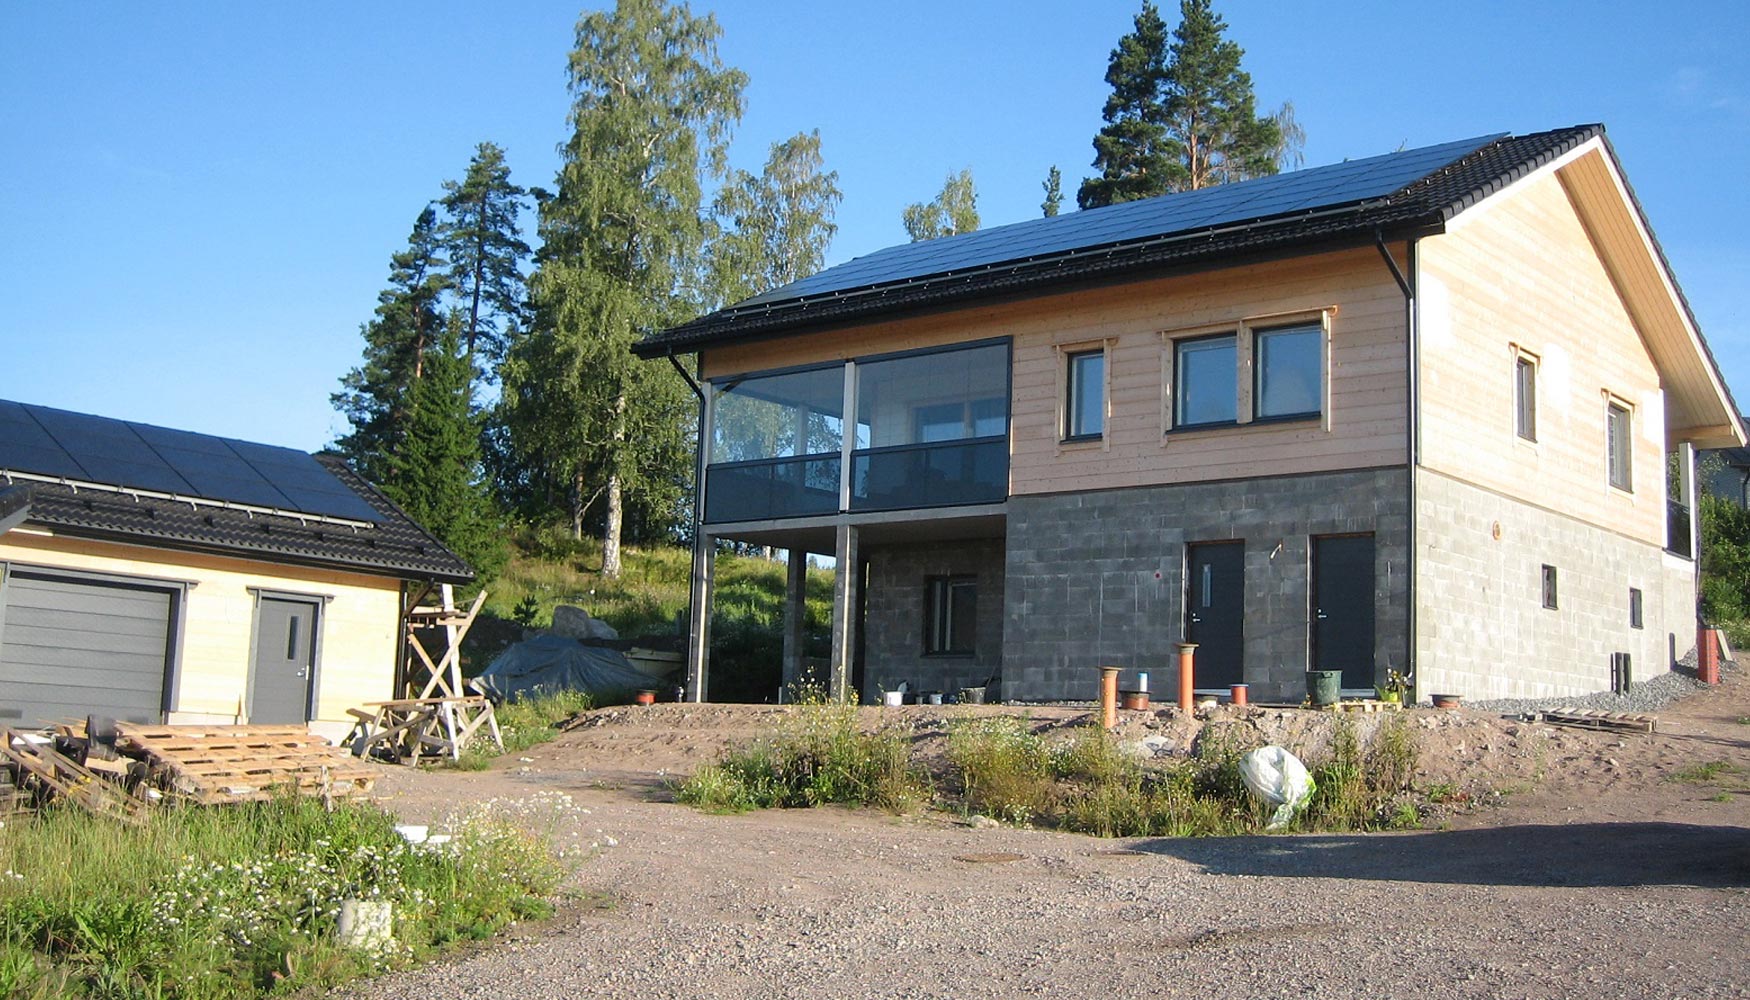 Tronco laminado Kuusamo Houses en la primera madera de consumo de energía cero Finlandia - Madera